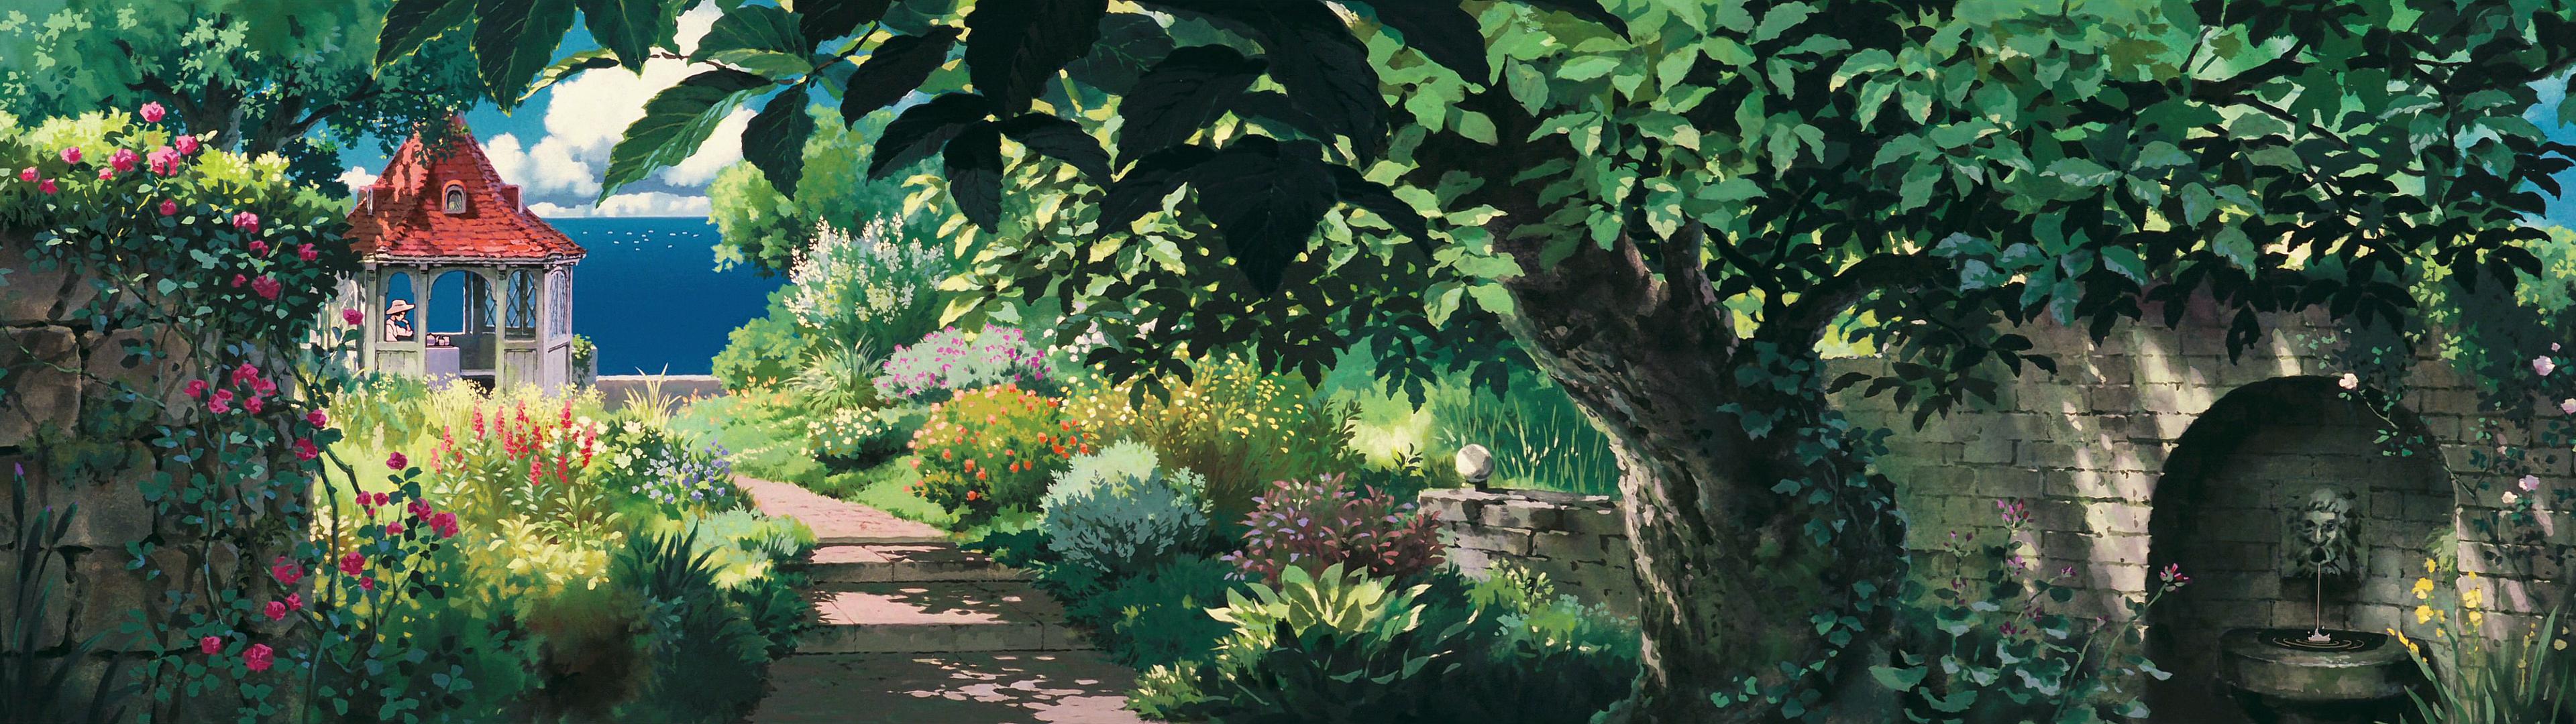 Hình nền Studio Ghibli độ phân giải cao cho đa màn hình: Nếu bạn là một fan của Studio Ghibli, hãy không bỏ lỡ những hình nền độ phân giải cao được thiết kế đặc biệt dành cho đa màn hình. Những tấm hình đẹp mắt và sắc nét này sẽ khiến cho màn hình của bạn trở nên sống động và thú vị hơn bao giờ hết.